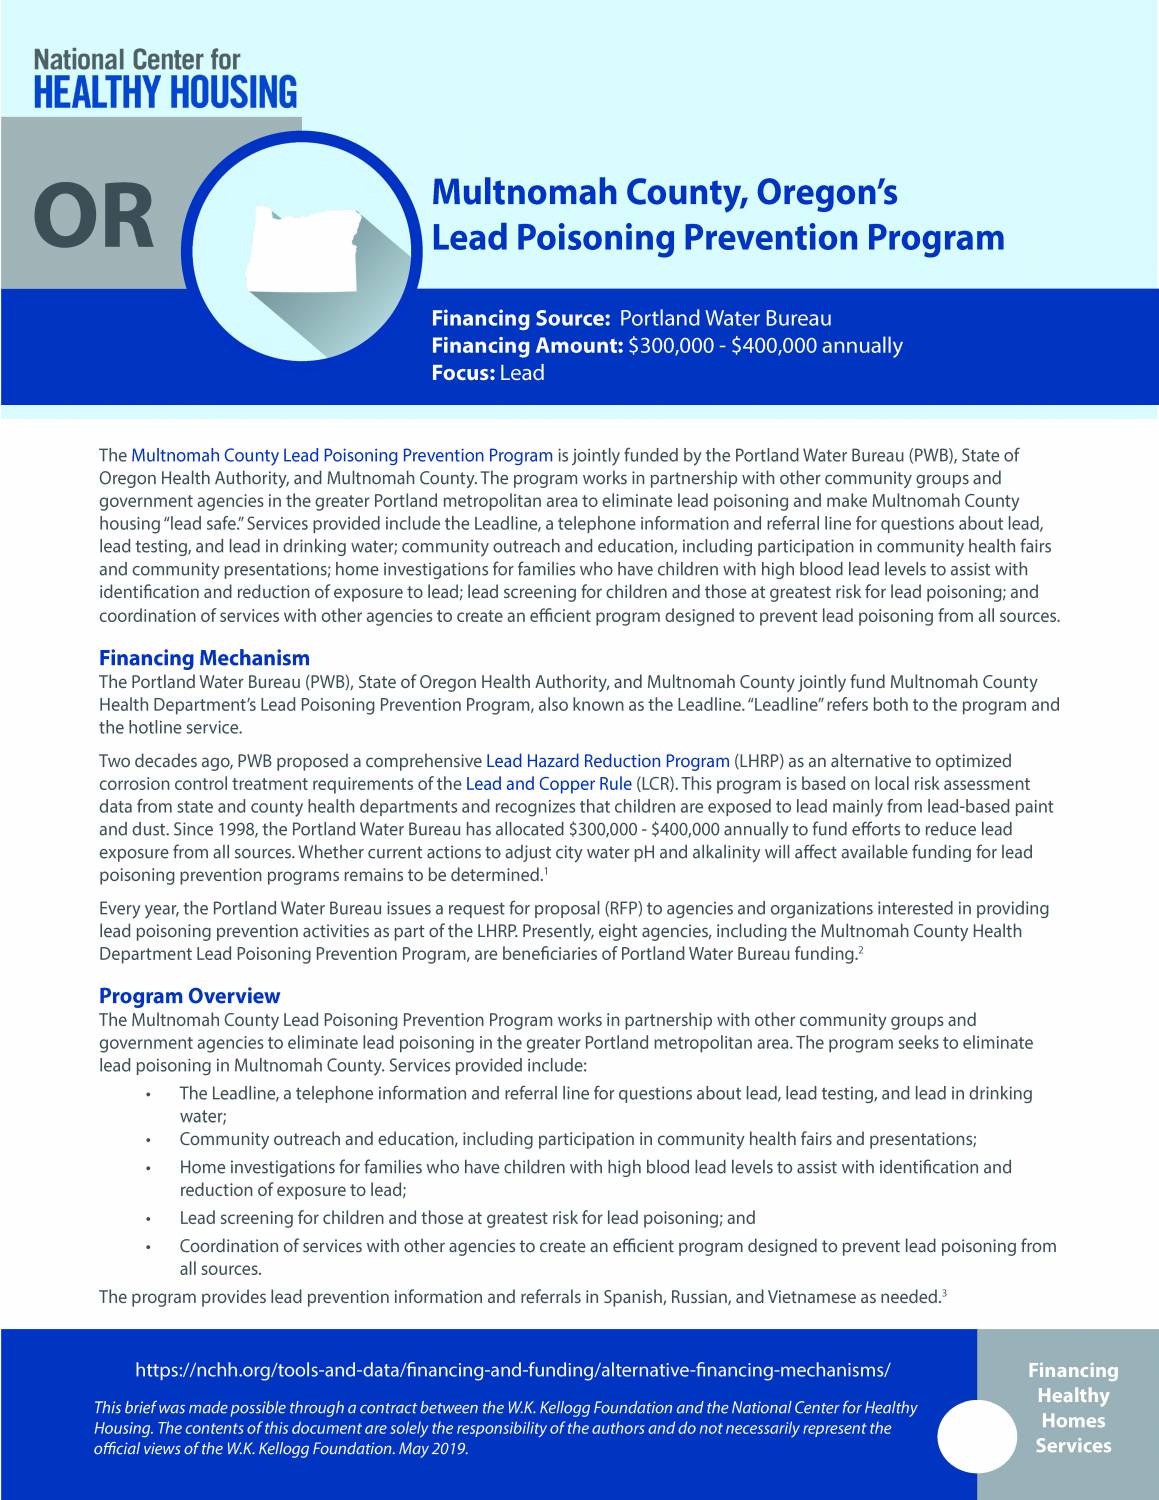 Multnomah County, Oregon’s Lead Poisoning Prevention Program (Leadline)